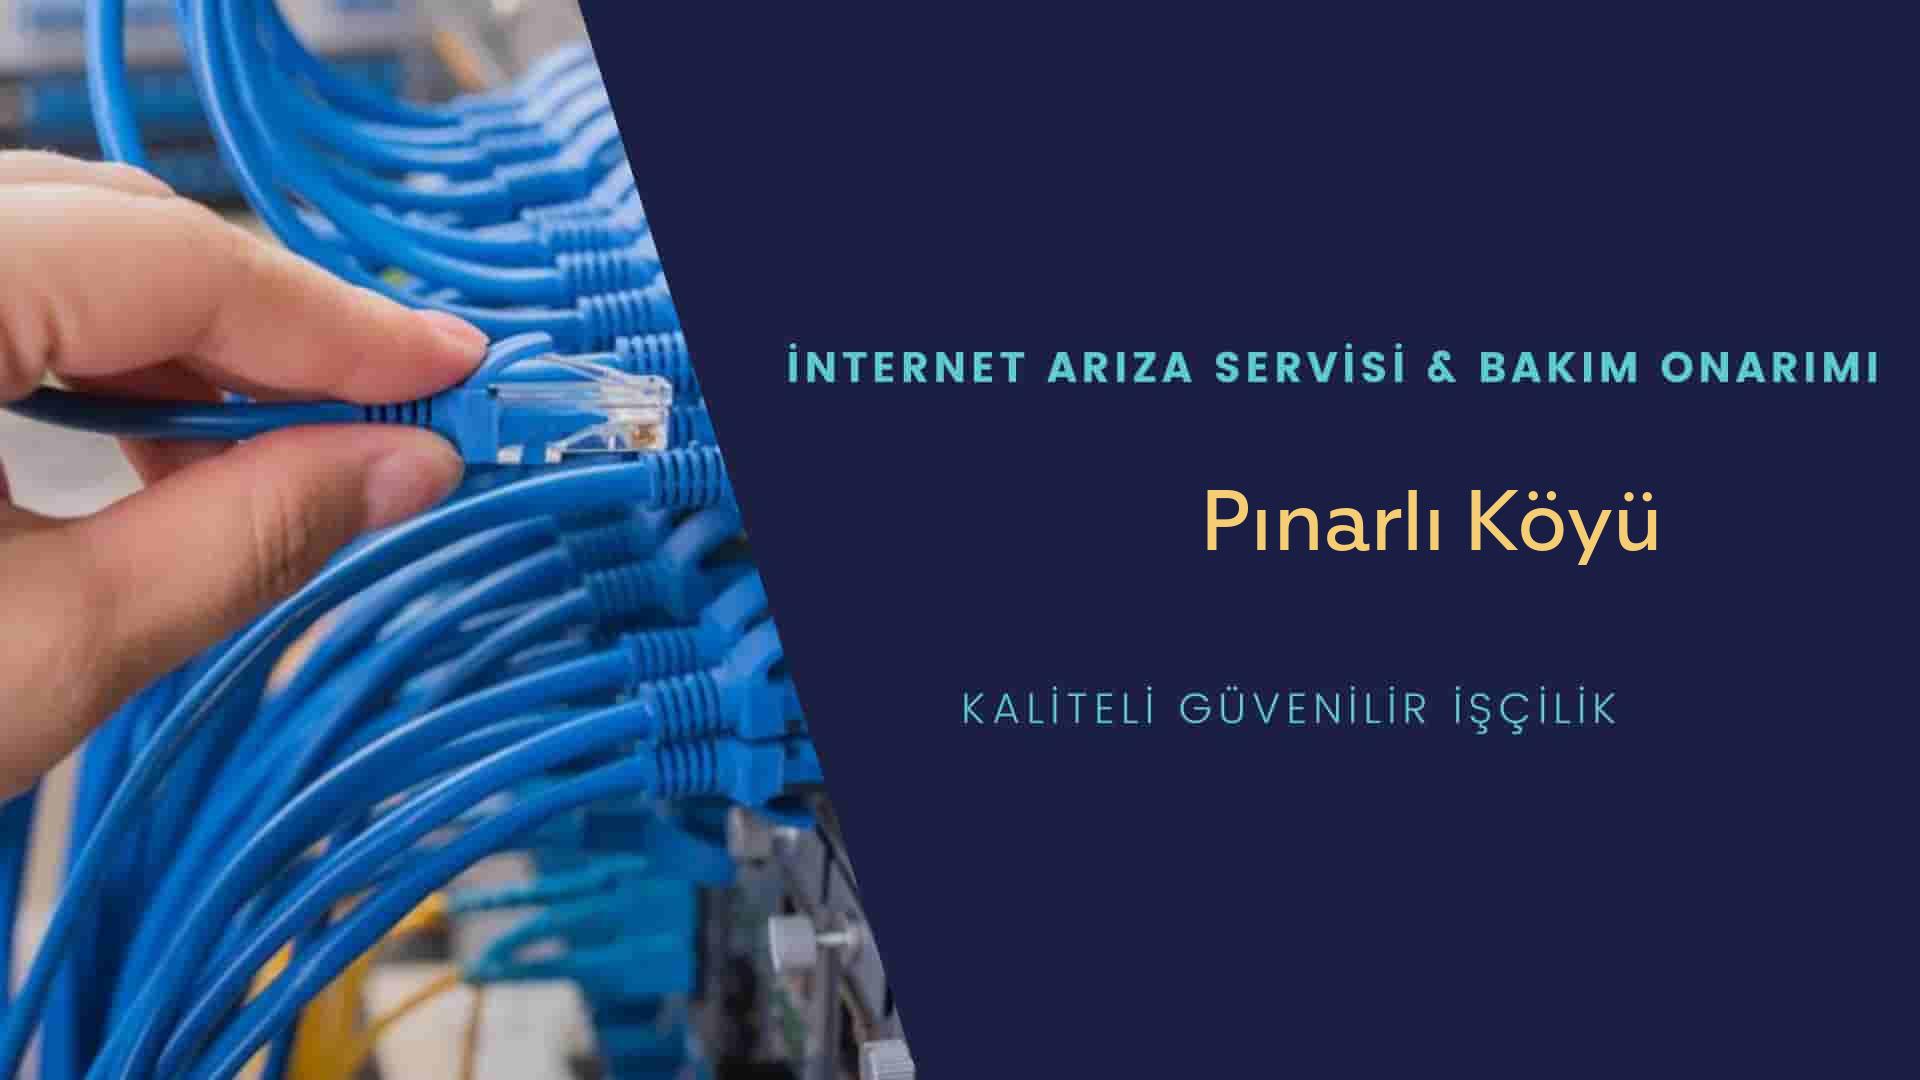 Pınarlı Köyü internet kablosu çekimi yapan yerler veya elektrikçiler mi? arıyorsunuz doğru yerdesiniz o zaman sizlere 7/24 yardımcı olacak profesyonel ustalarımız bir telefon kadar yakındır size.